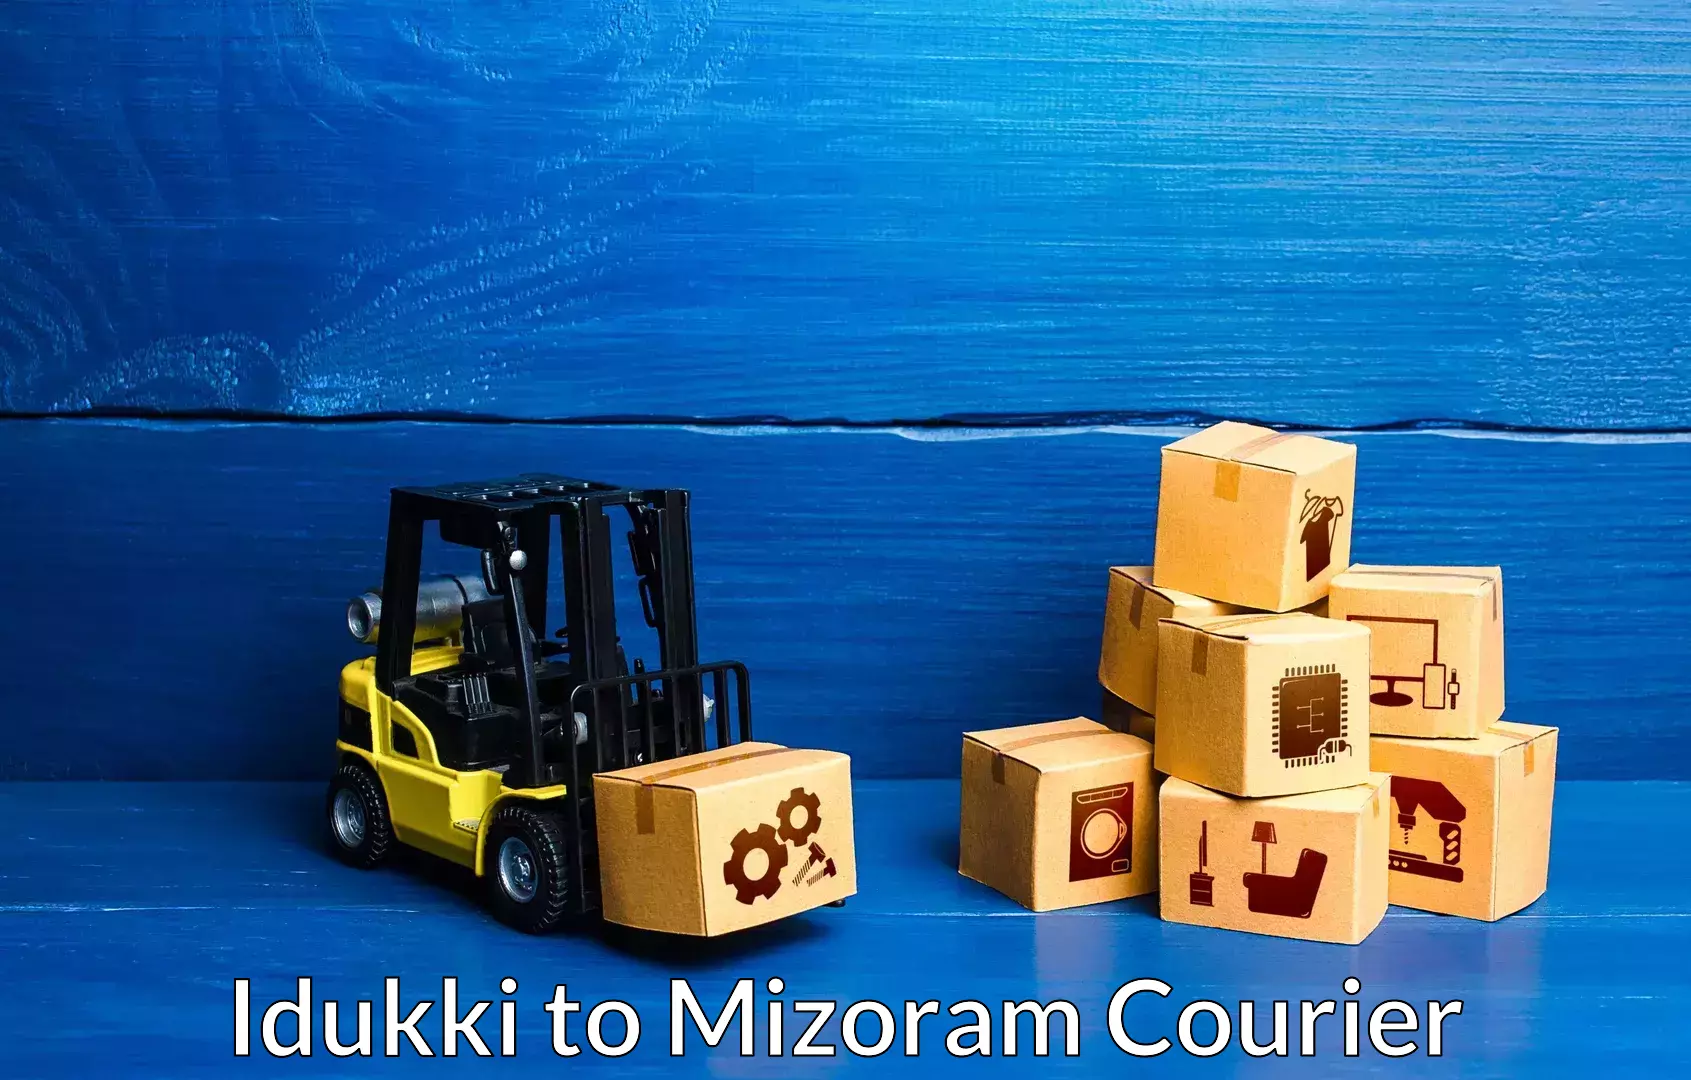 Furniture transport experts Idukki to Mizoram